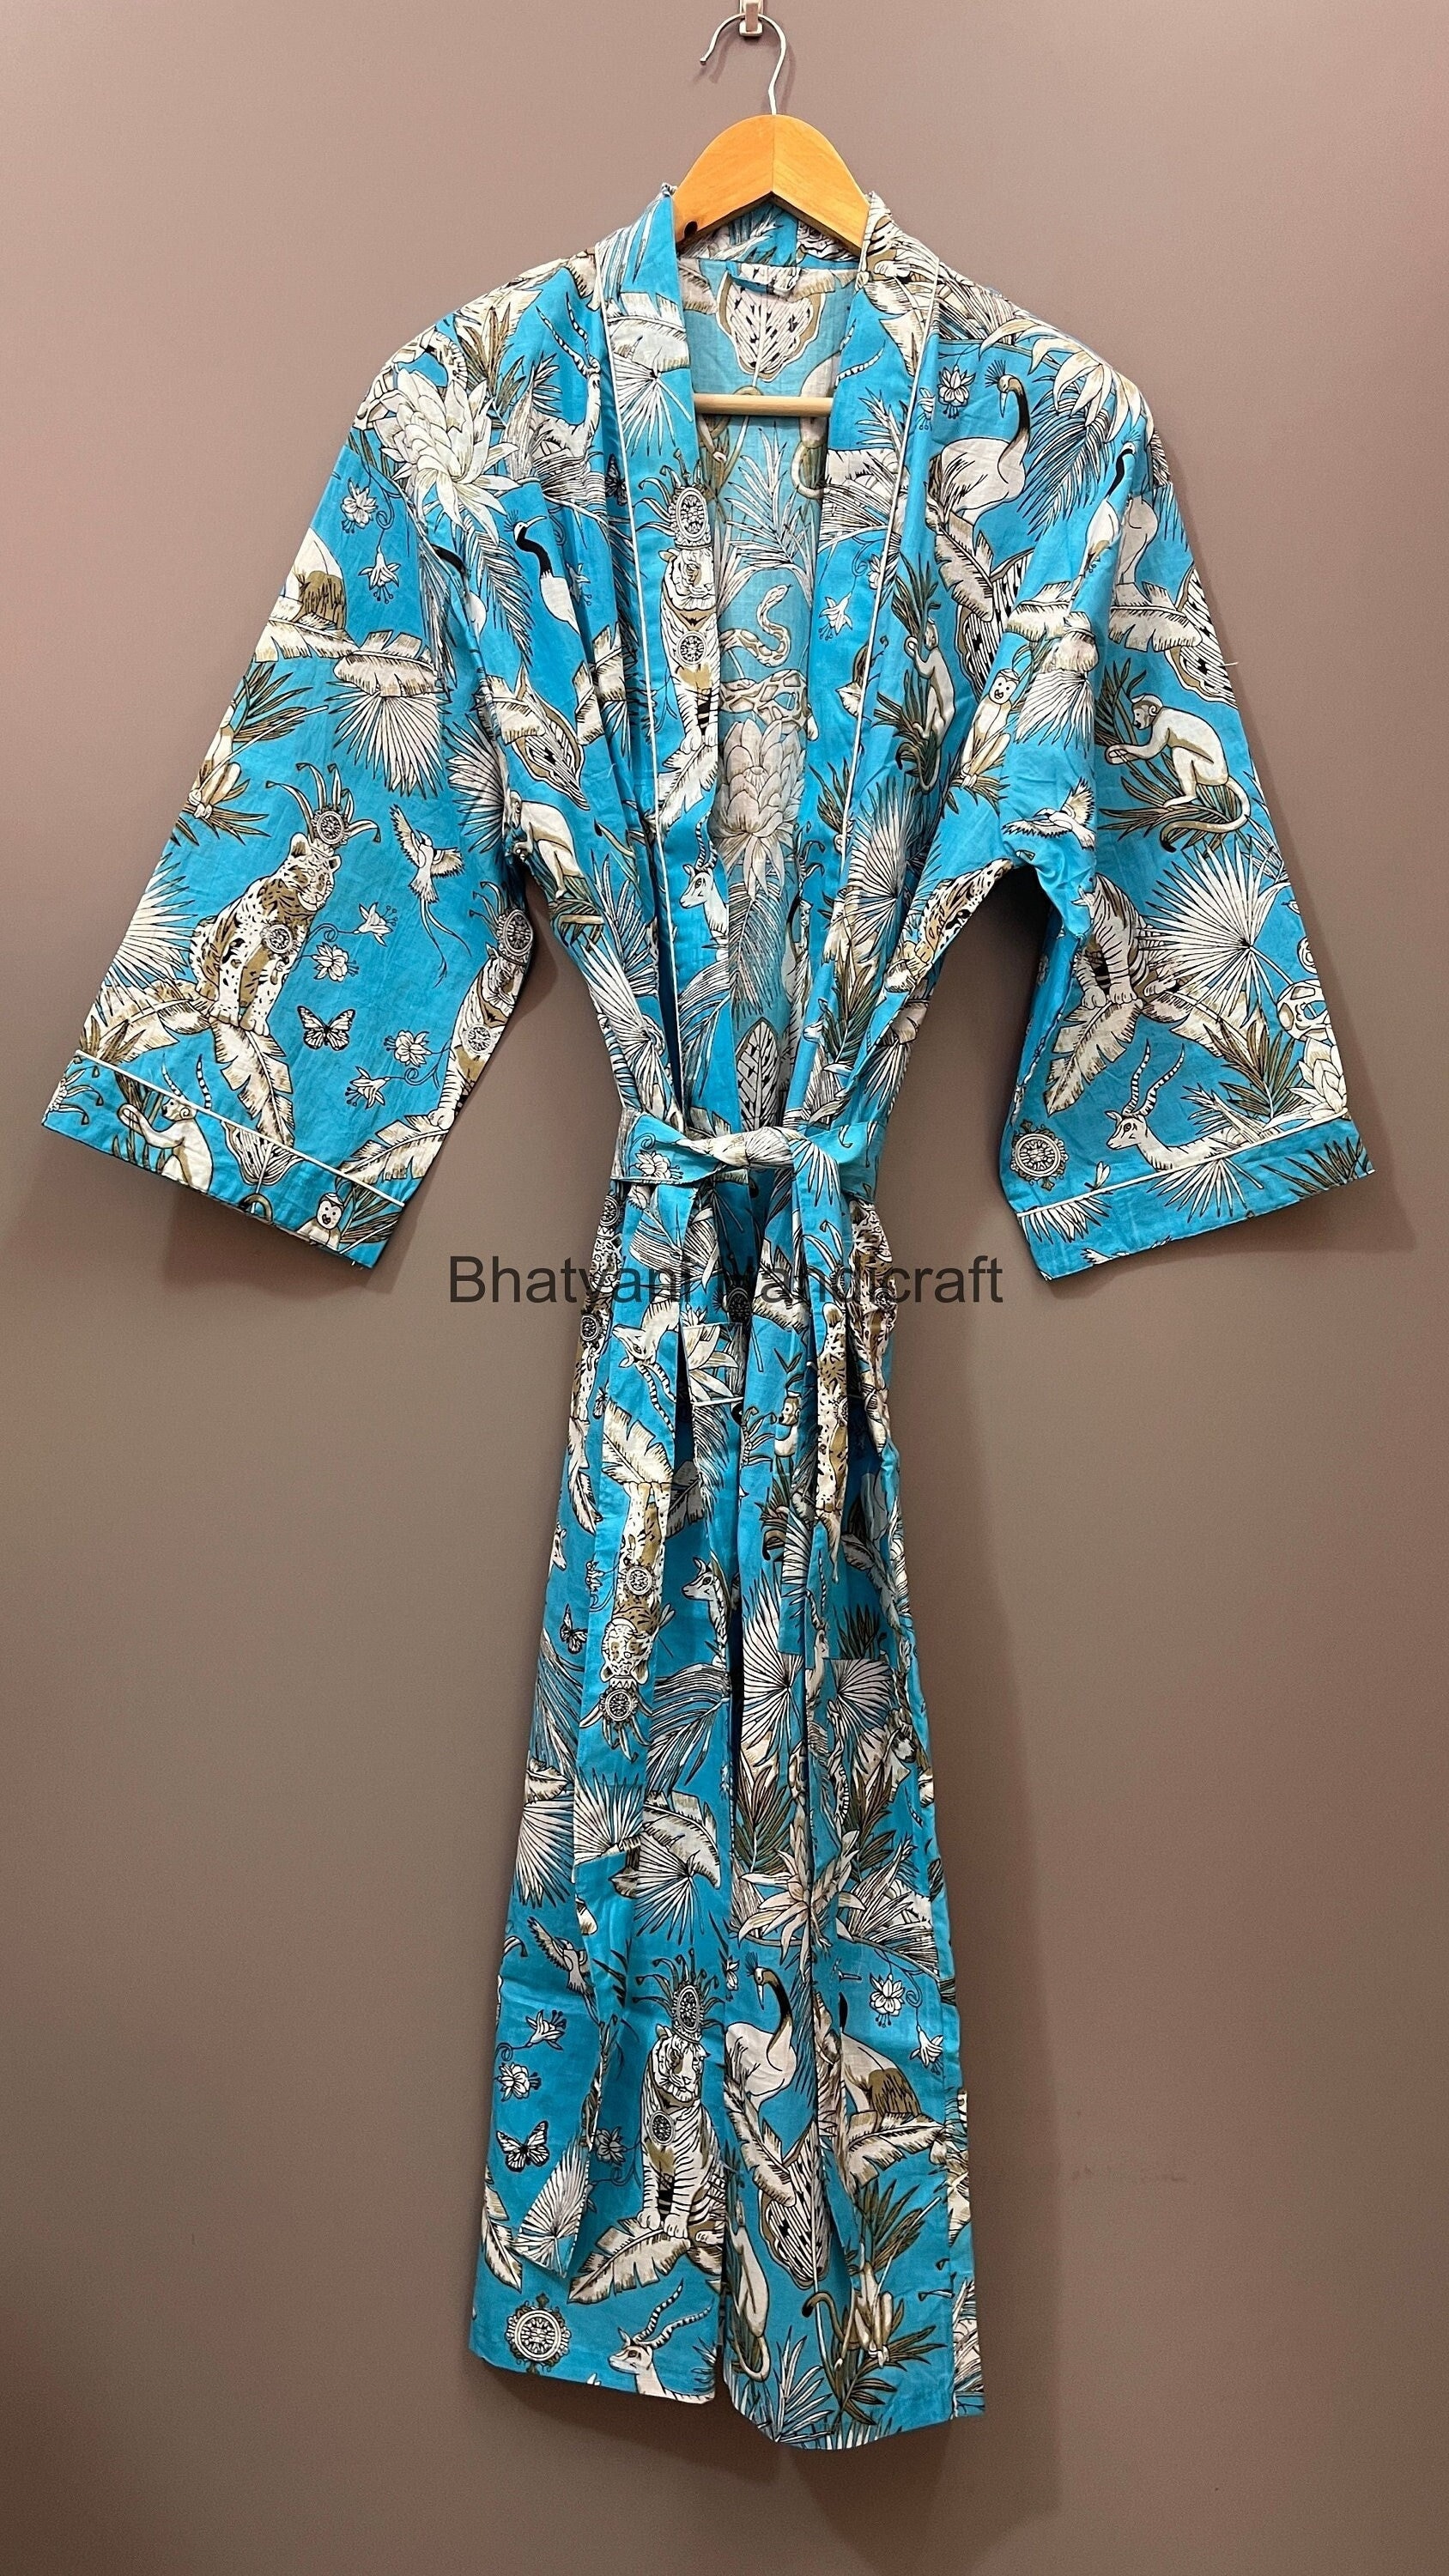 Dschungel Safari Print Baumwolle Kimono Robe|Brautjungfer Kleid|Nachthemd|Einheitsgröße Robe|Unisex von Bhatyanihandicraft